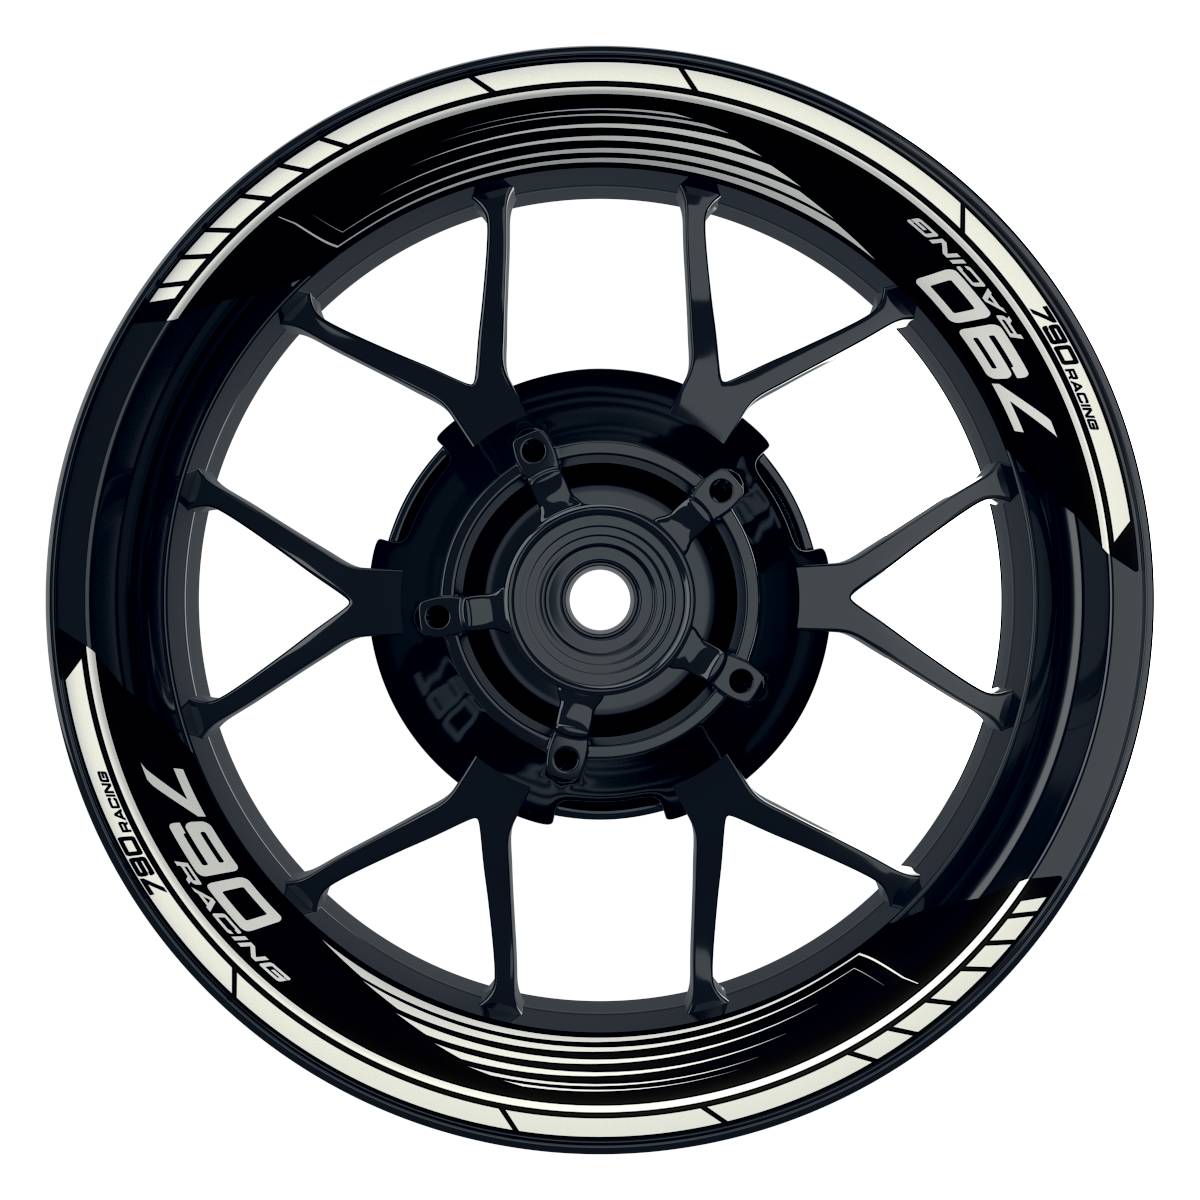 KTM Racing 790 SAW schwarz weiss Frontansicht